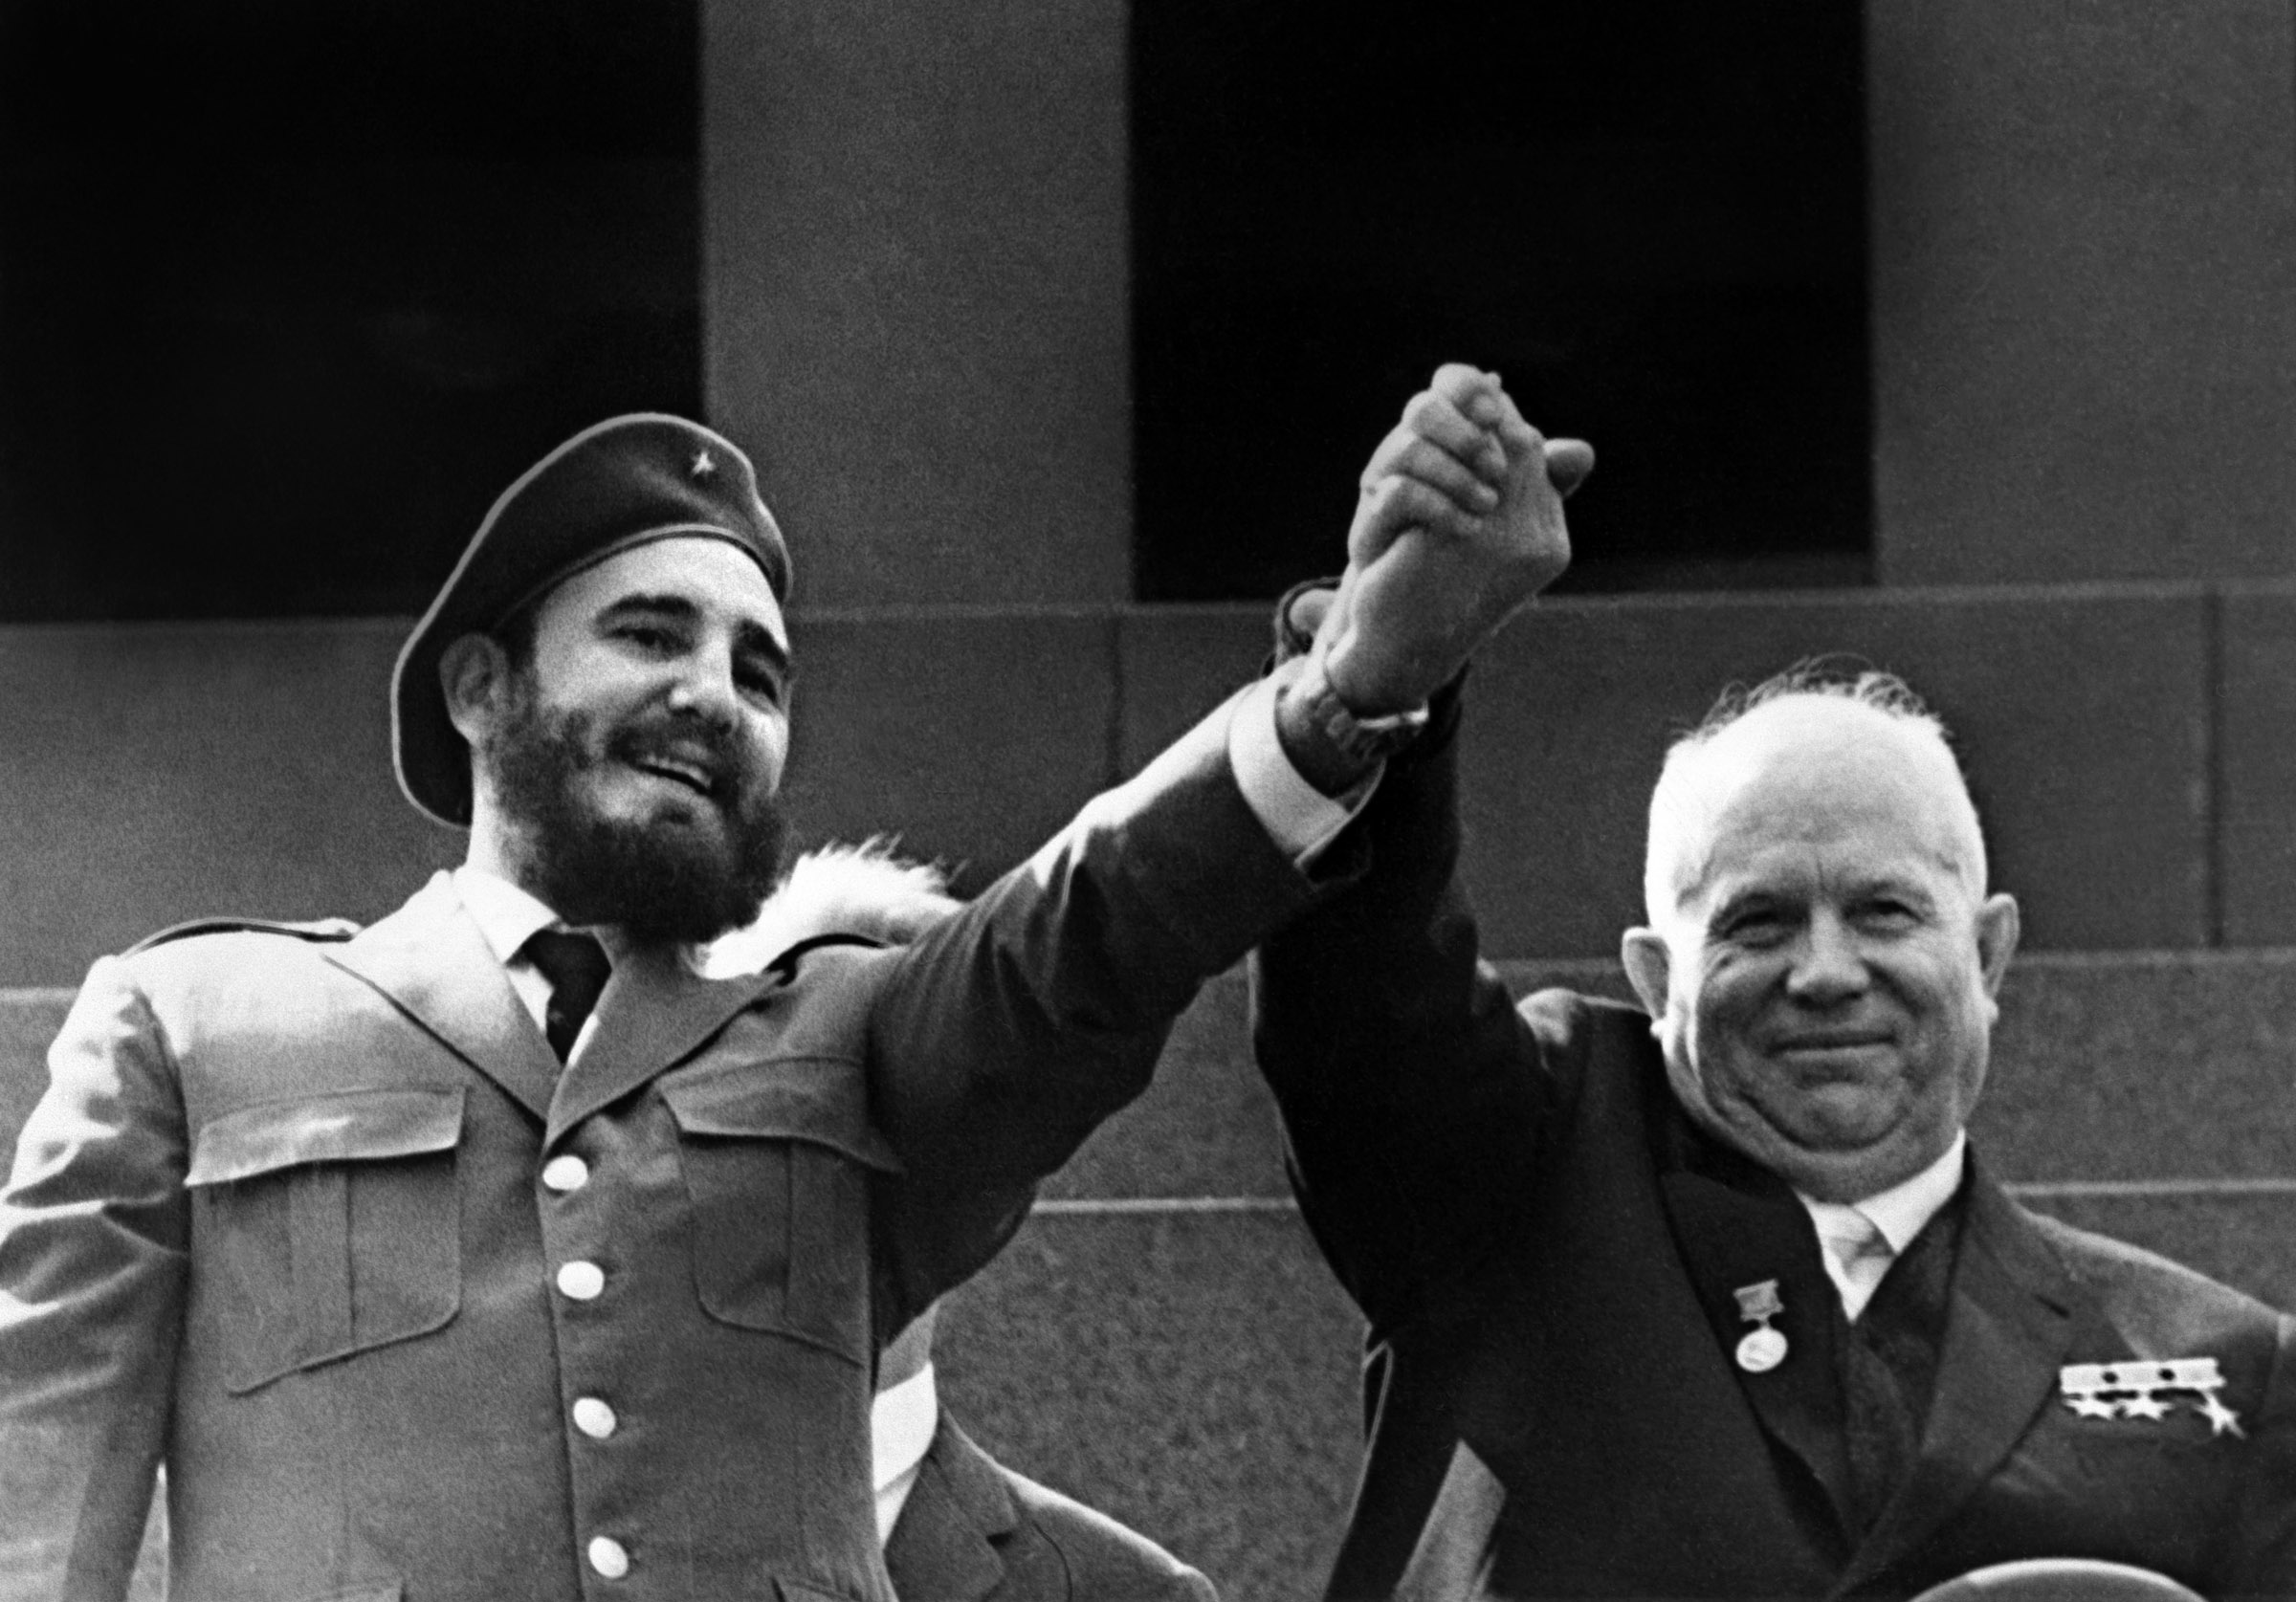 Castro and Khrushchev